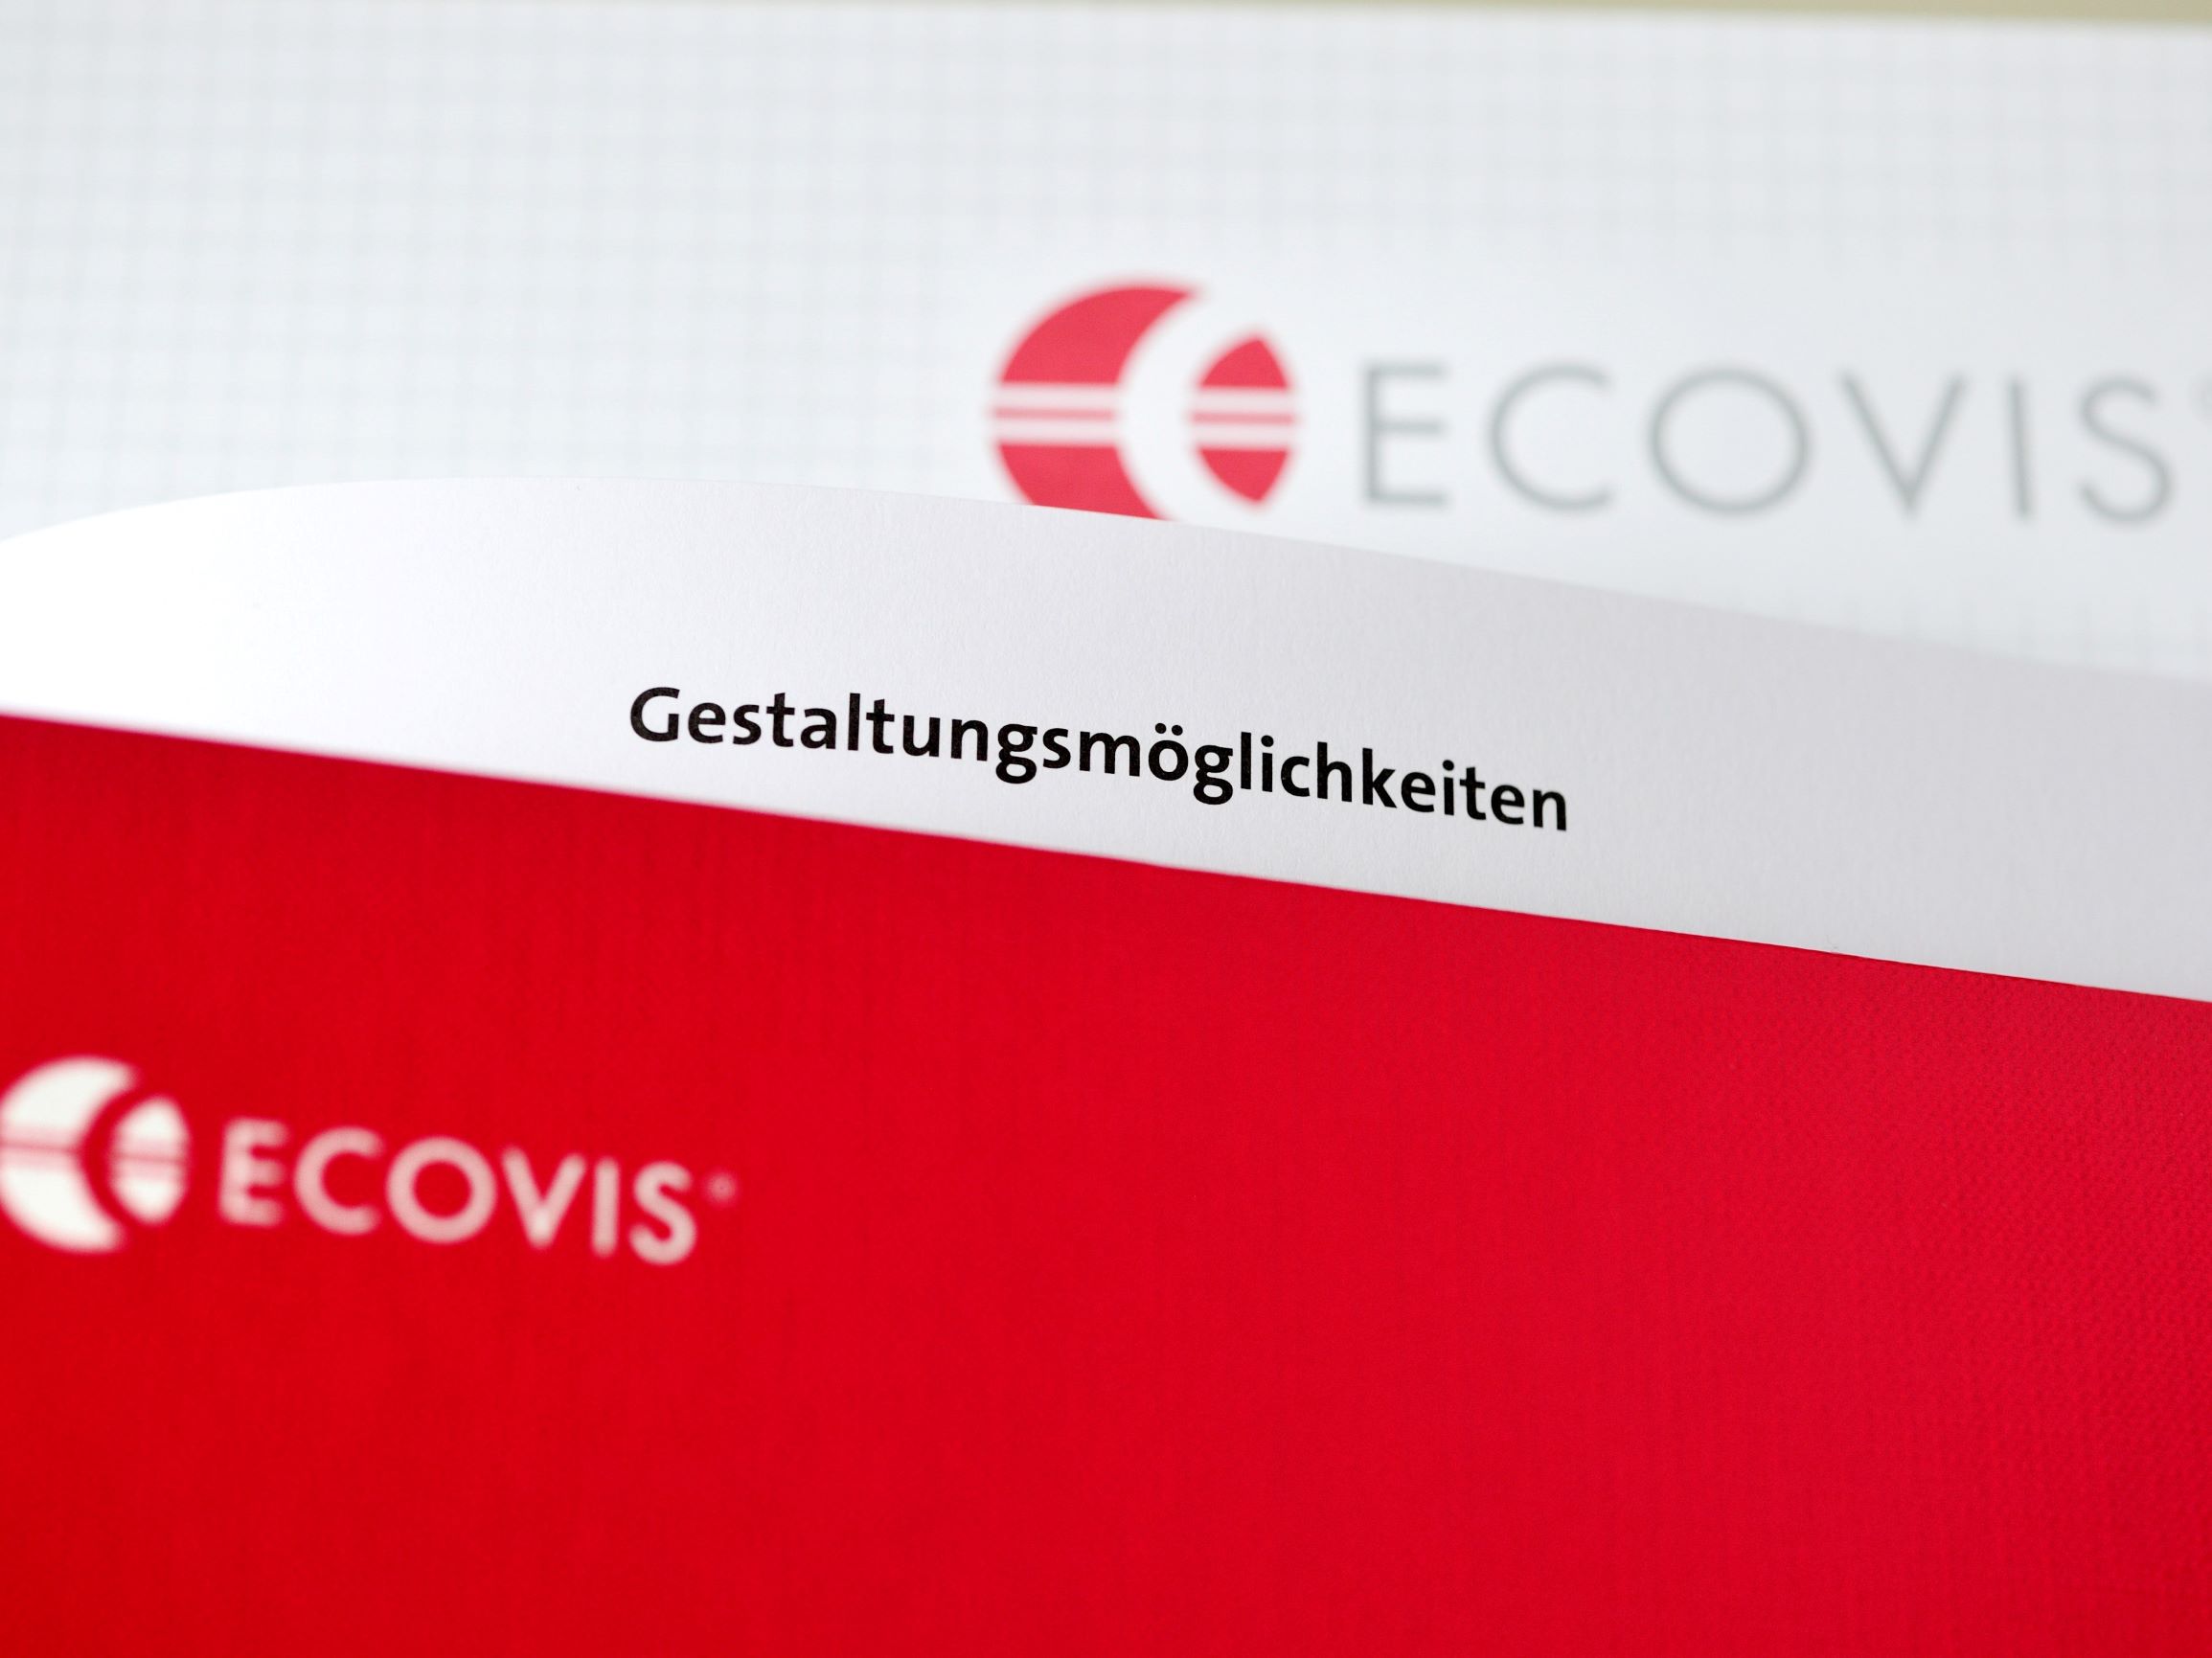 ECOVIS ježek steuerliche Bedingungen beim Ewerb einer tschechischen Immobilie